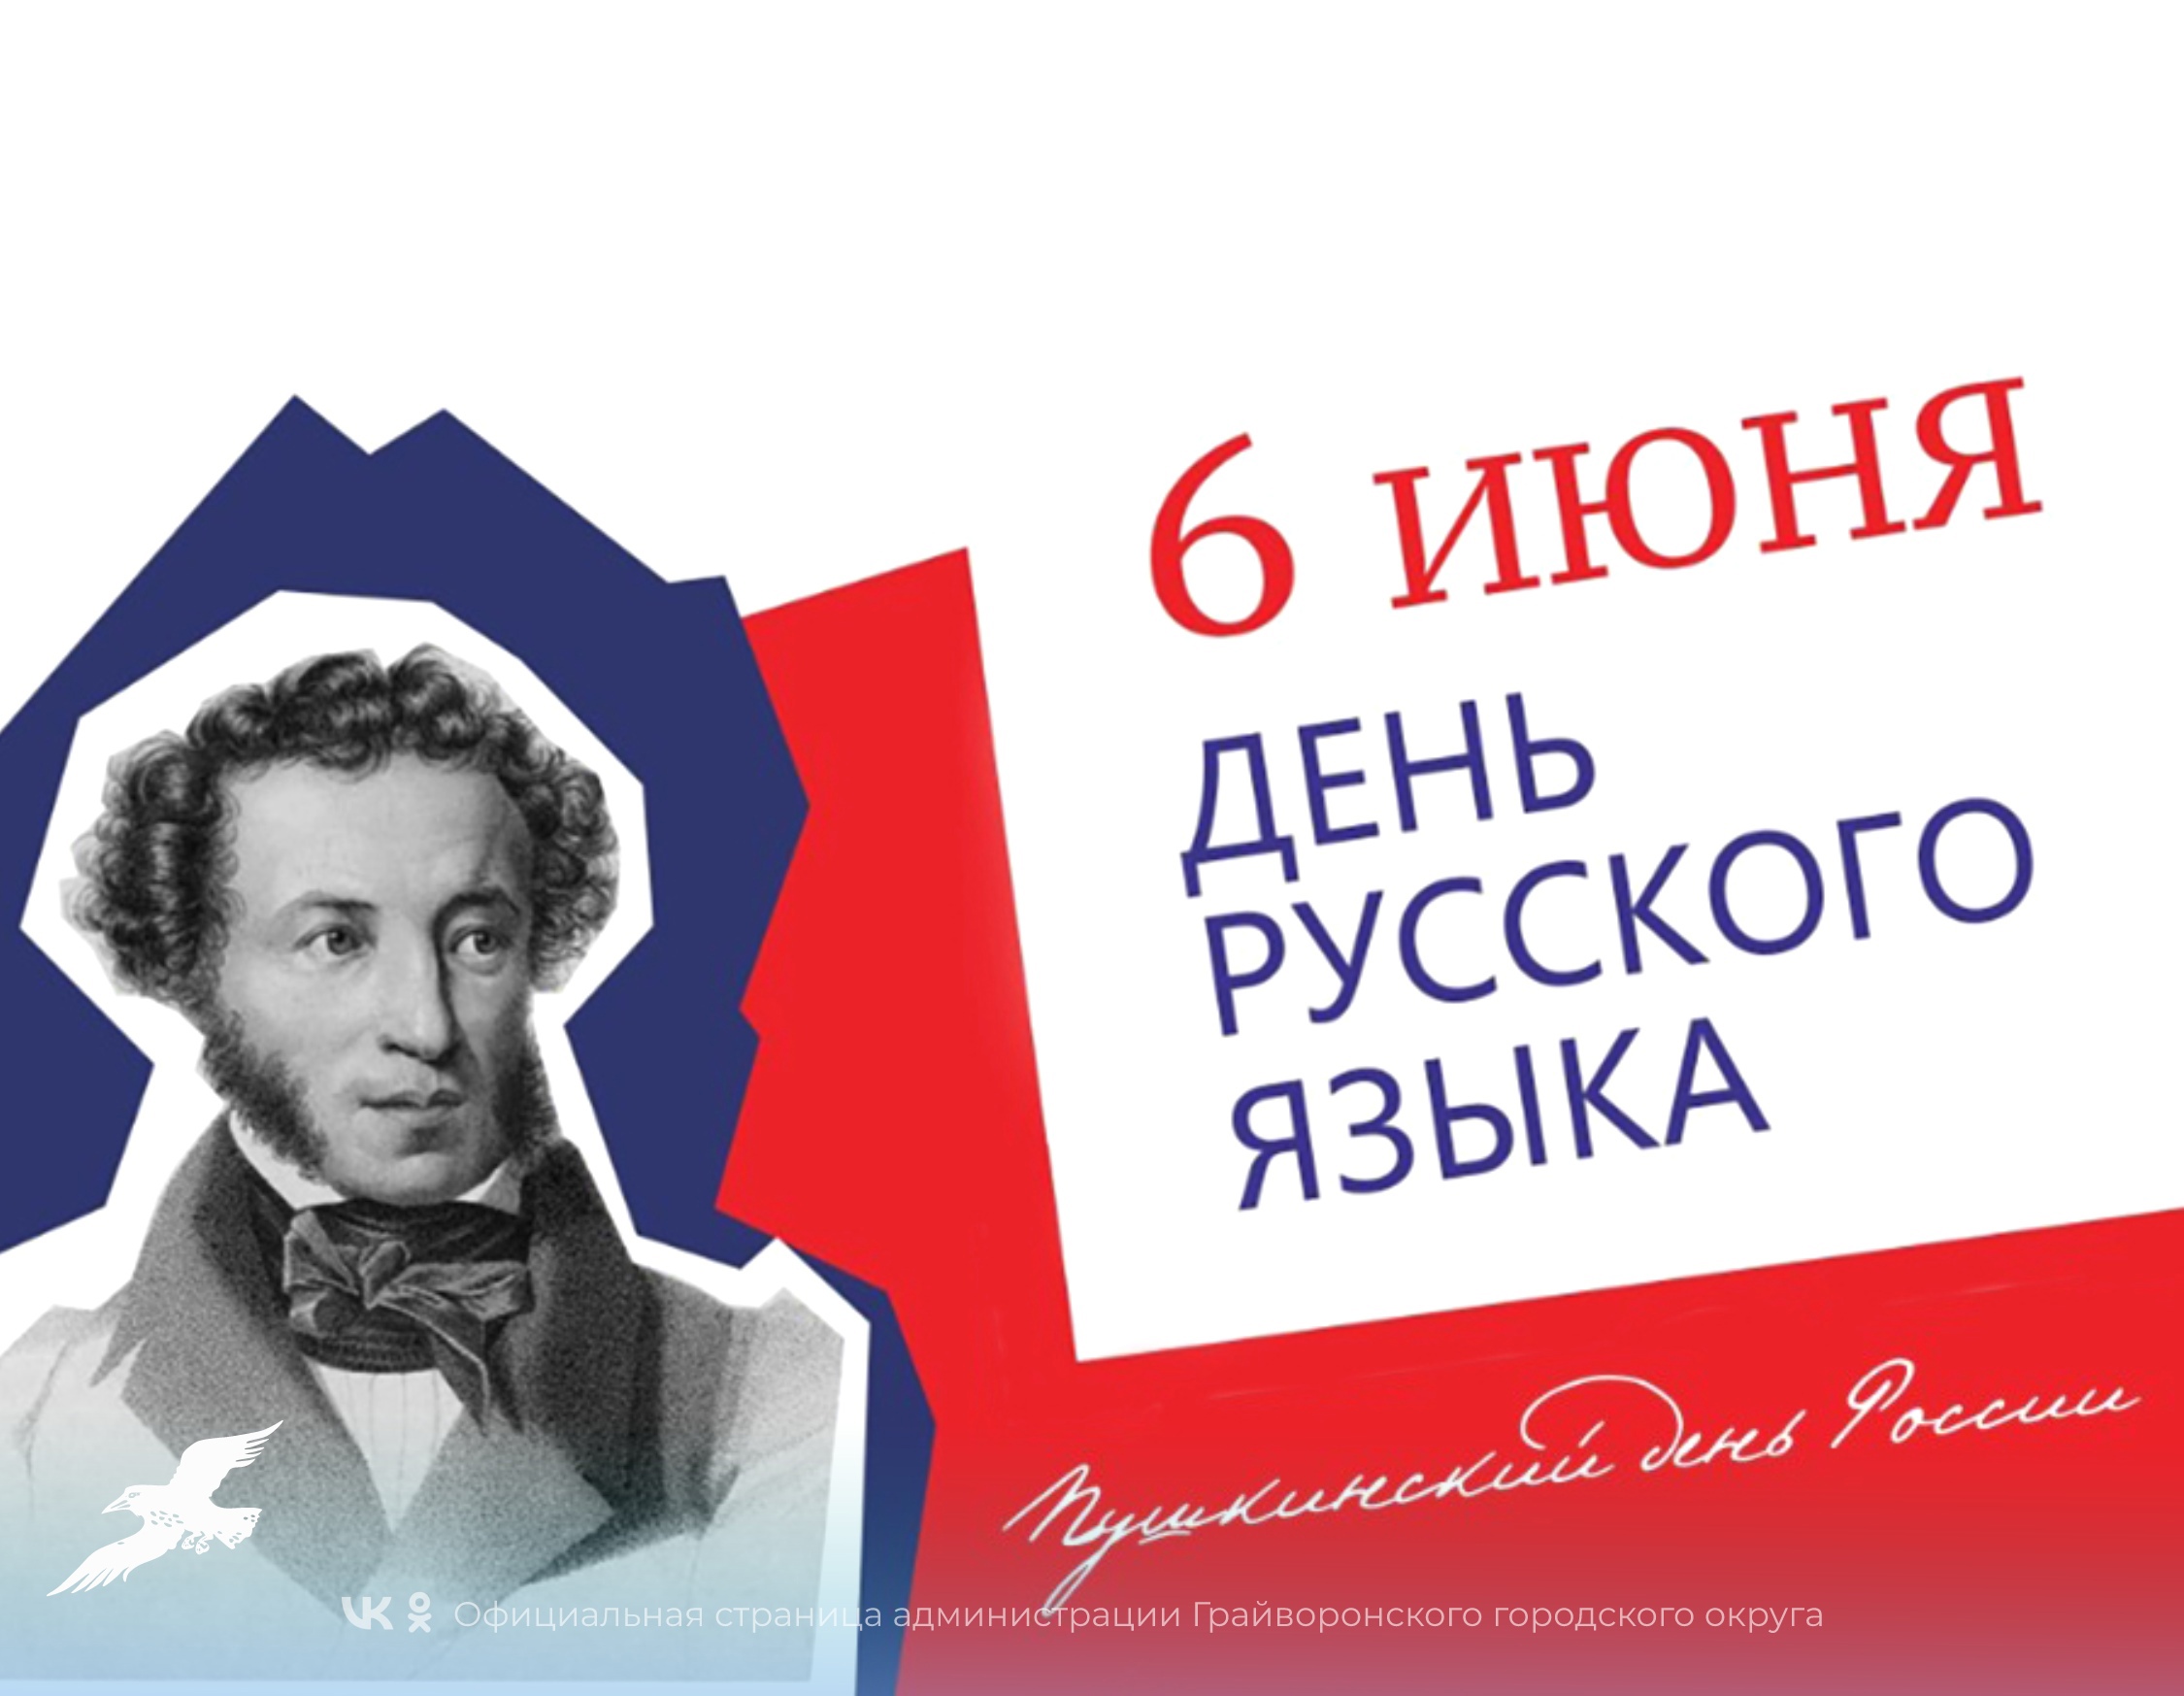 Сегодня, 6 июня, в день рождения Александра Сергеевича Пушкина, россияне отмечают Пушкинский день России – День русского языка!.